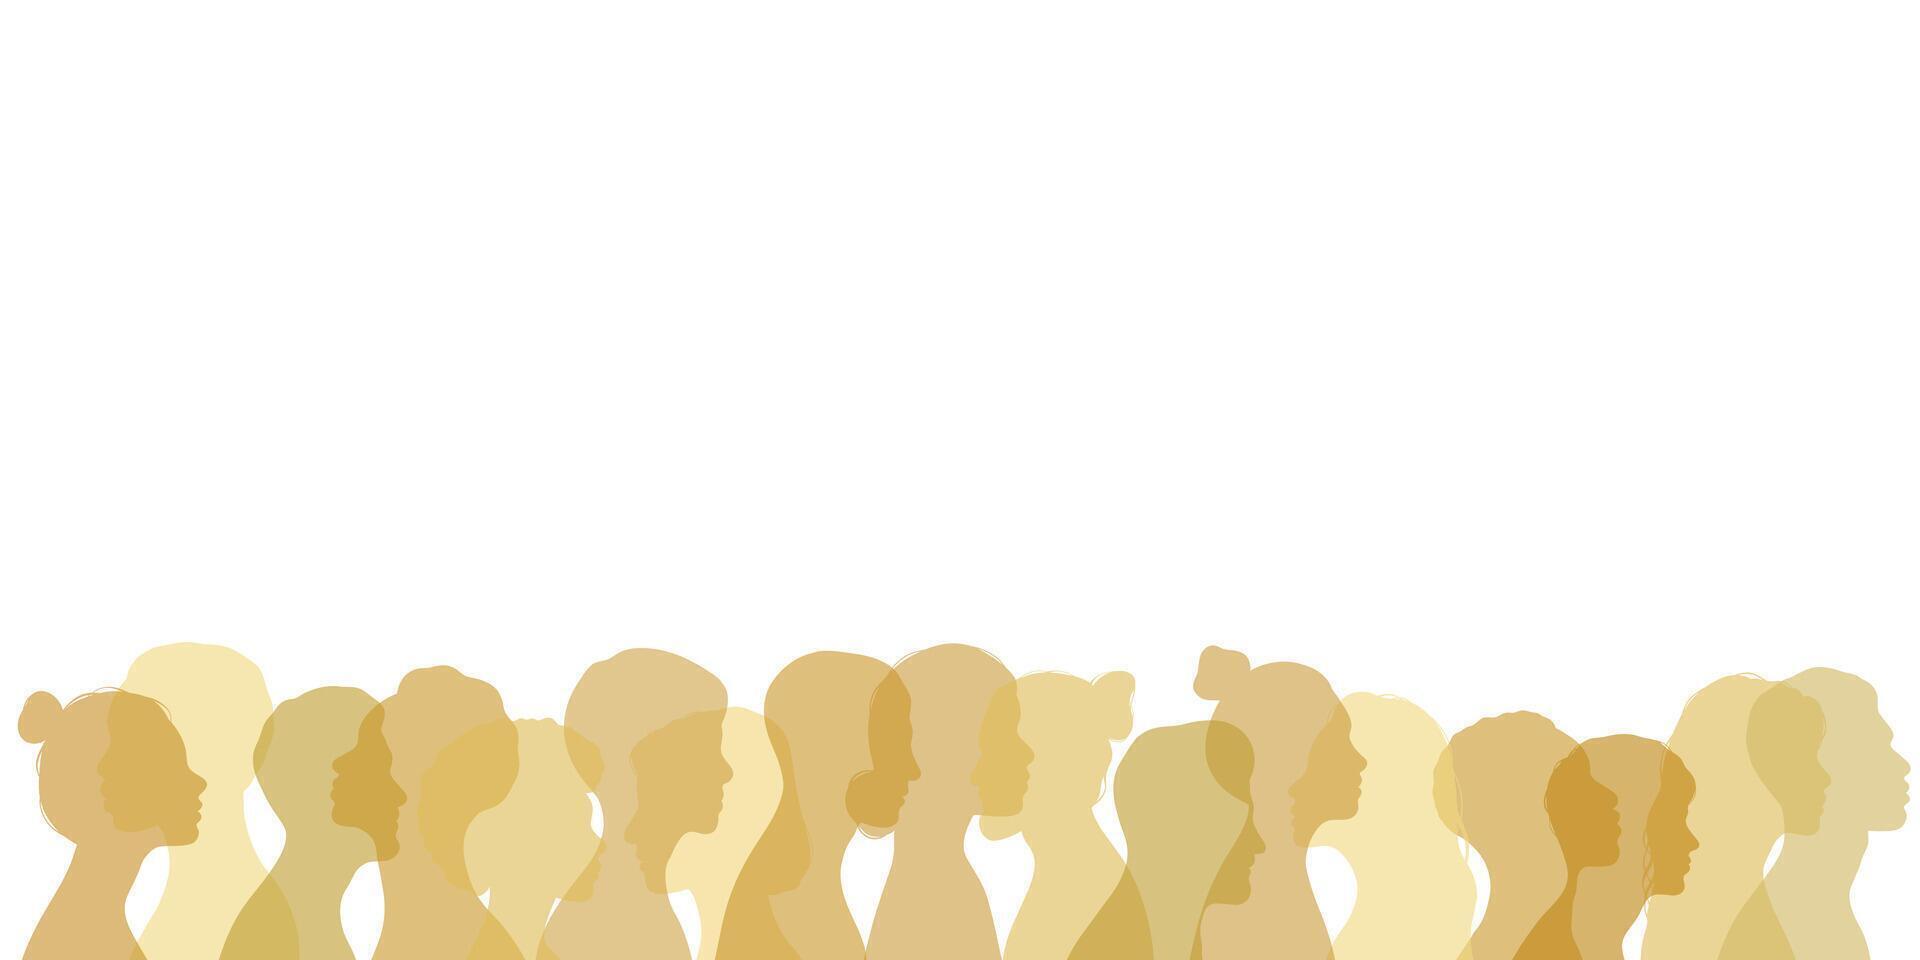 guld mänsklig huvud silhuetter, folkmassan baner vektor illustration med olika mänsklig profiler, isolerat